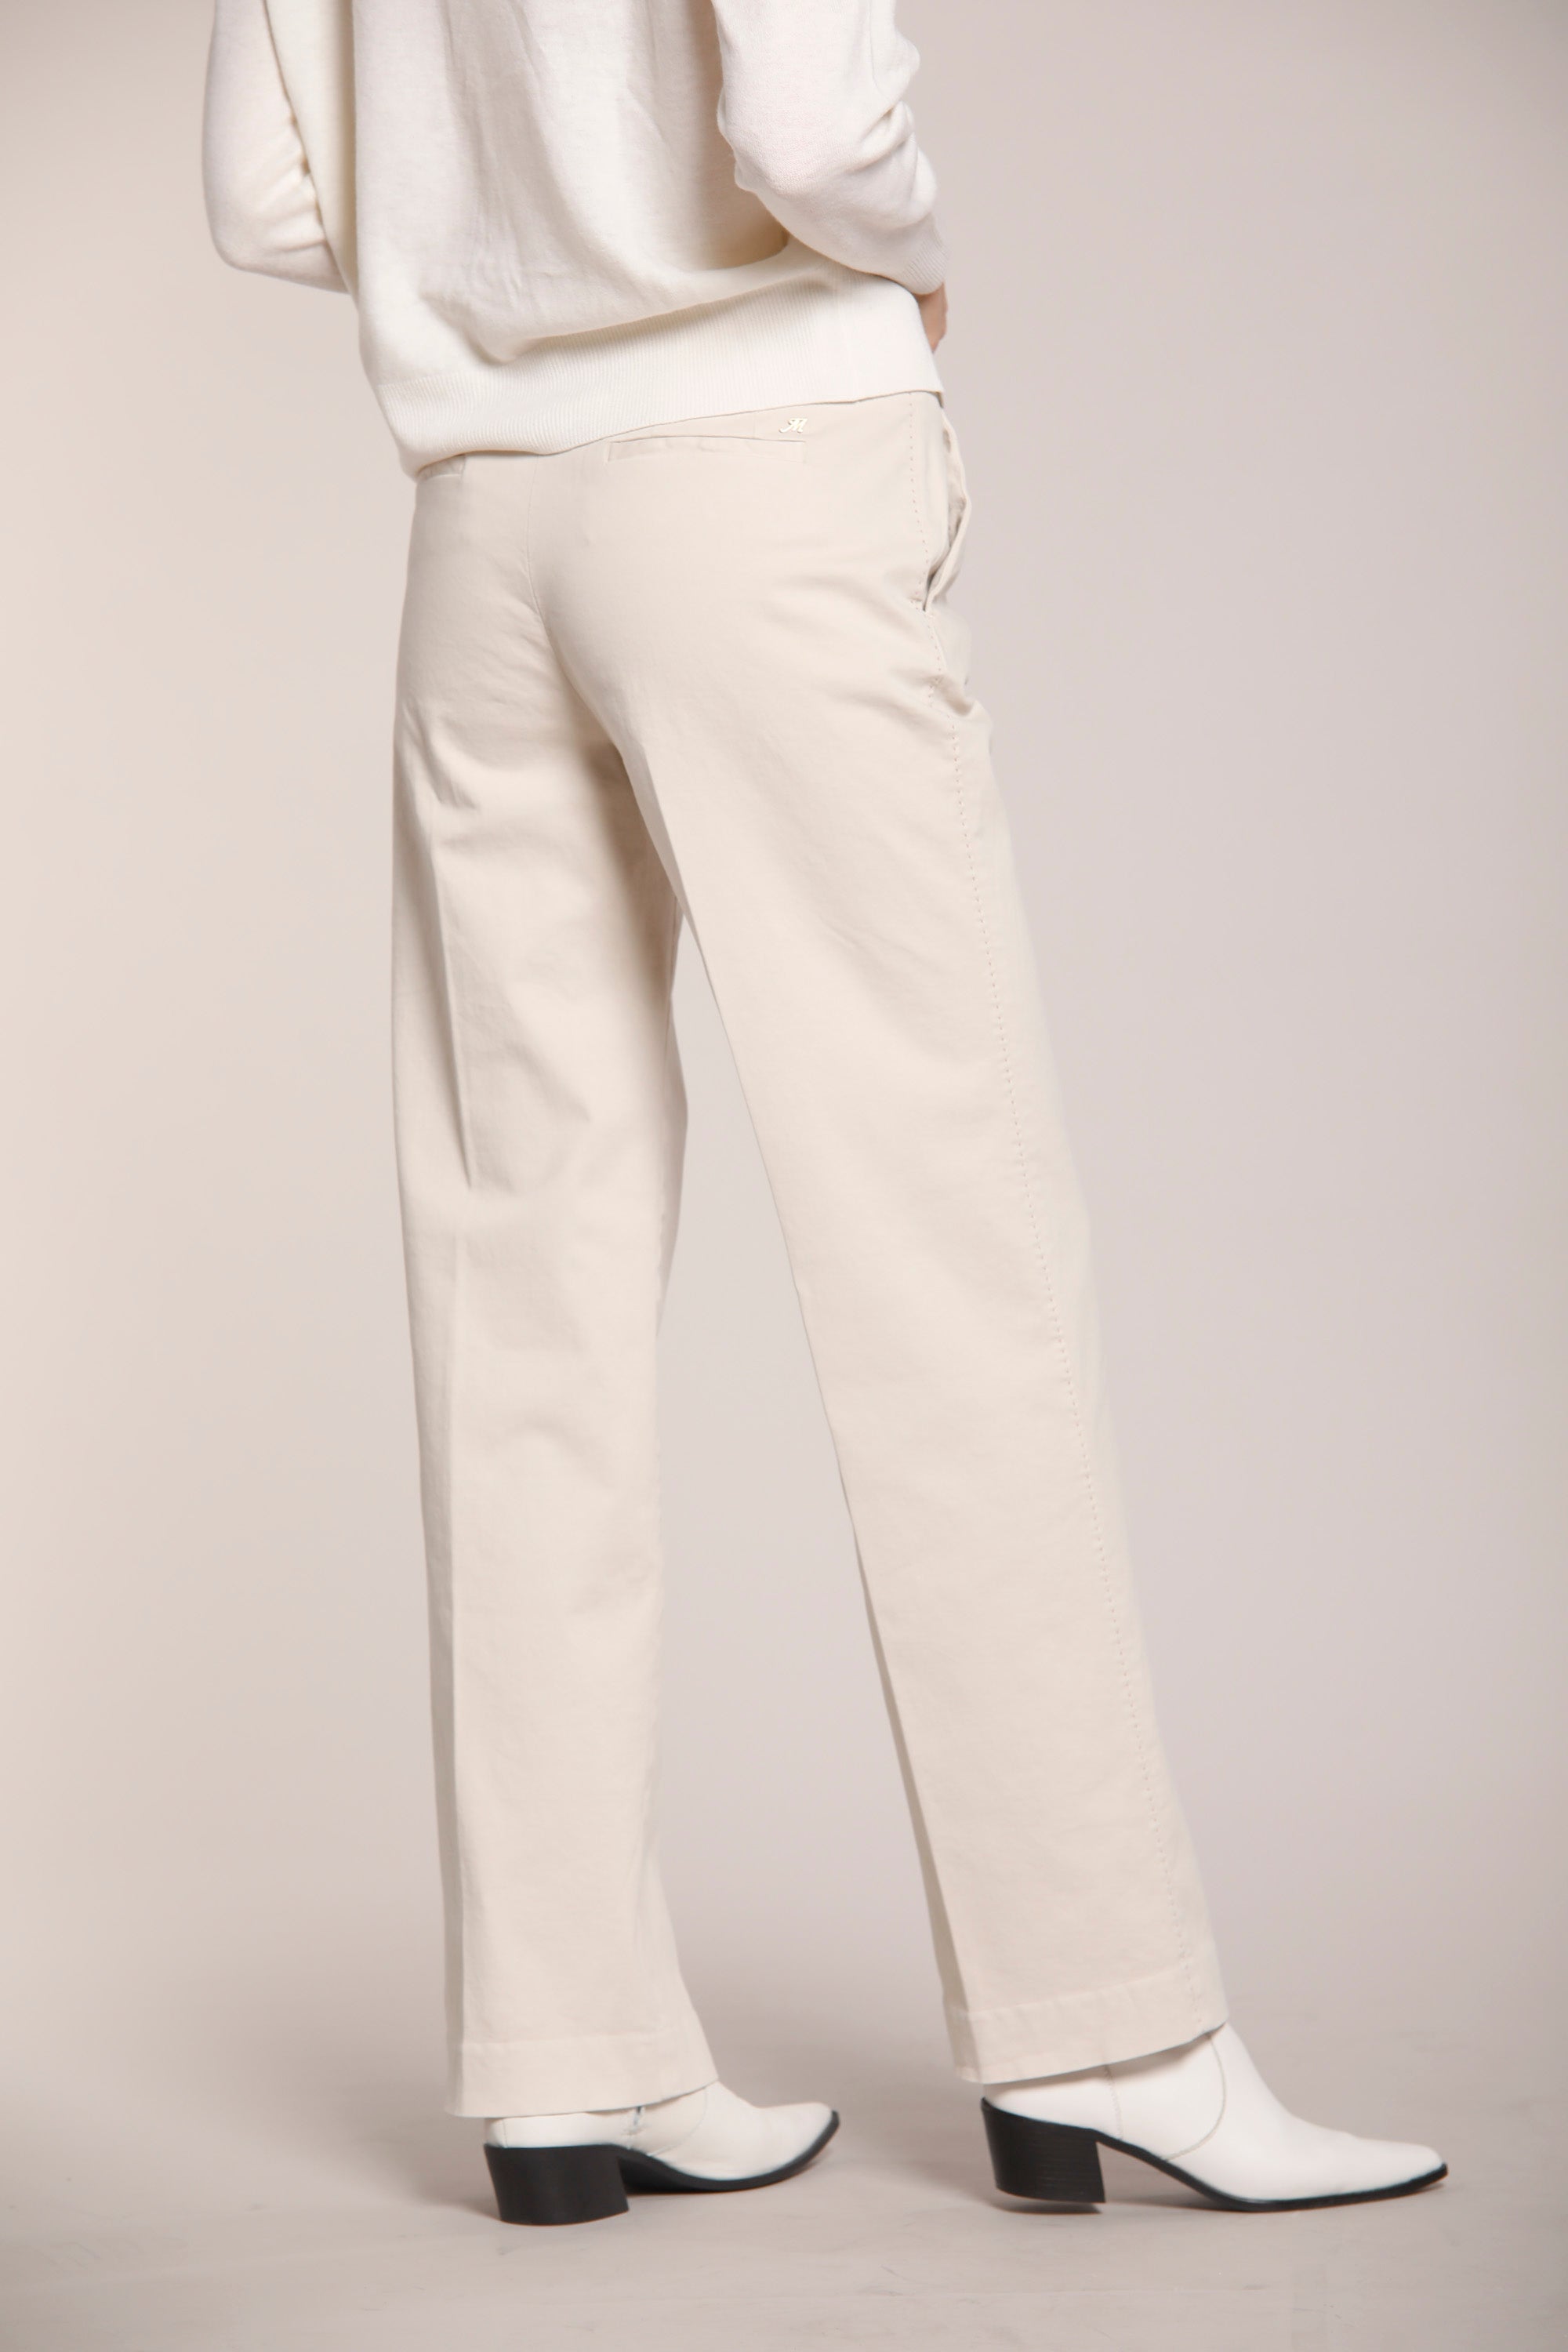 Image 5 du pantalon chino femme en satin couleur glace modèle New York Straight par Mason's